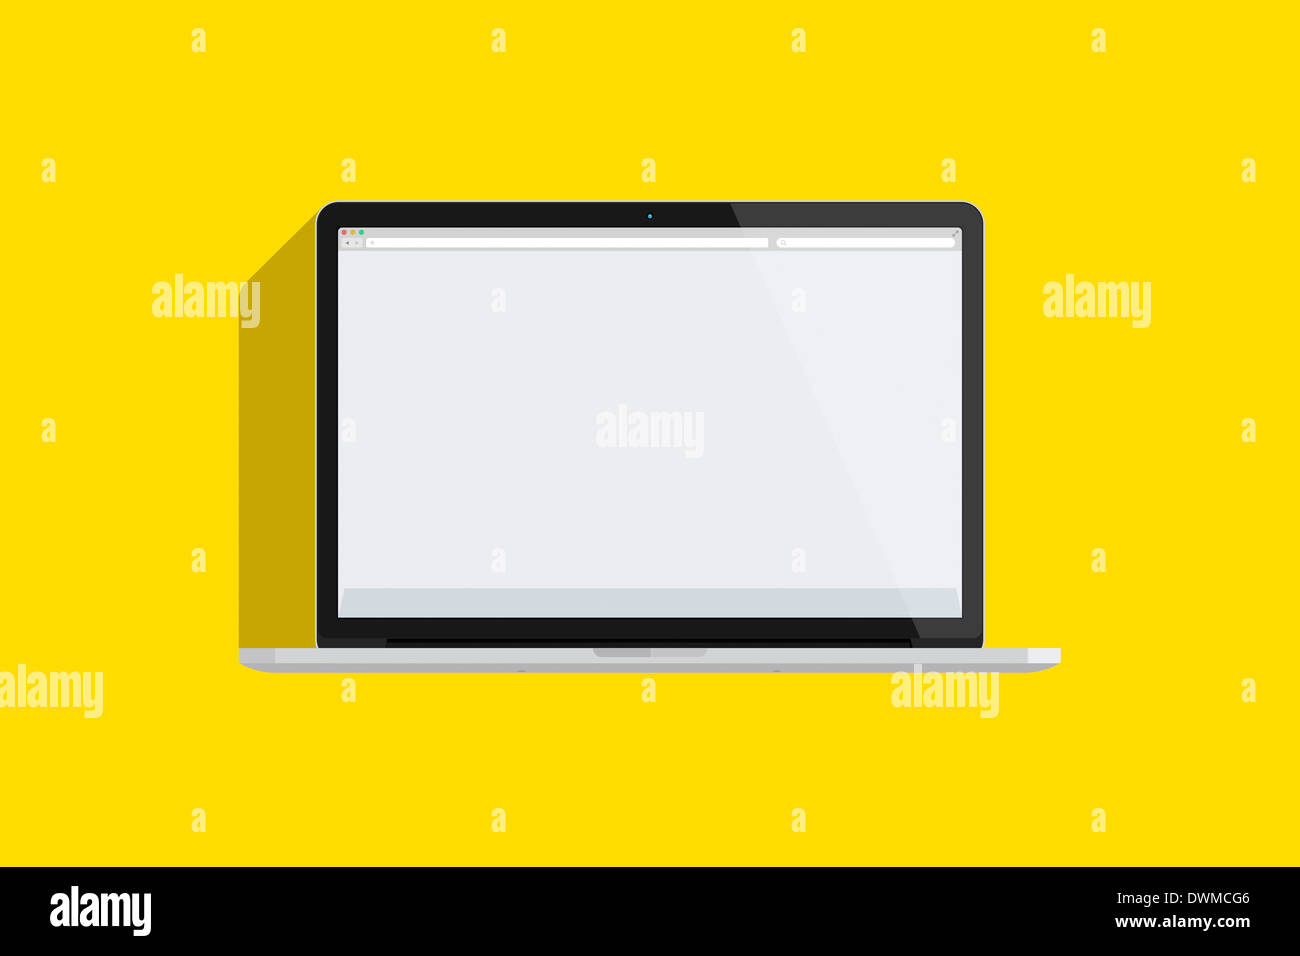 Illustrazione di un mac book pro, sfondo giallo. Foto Stock